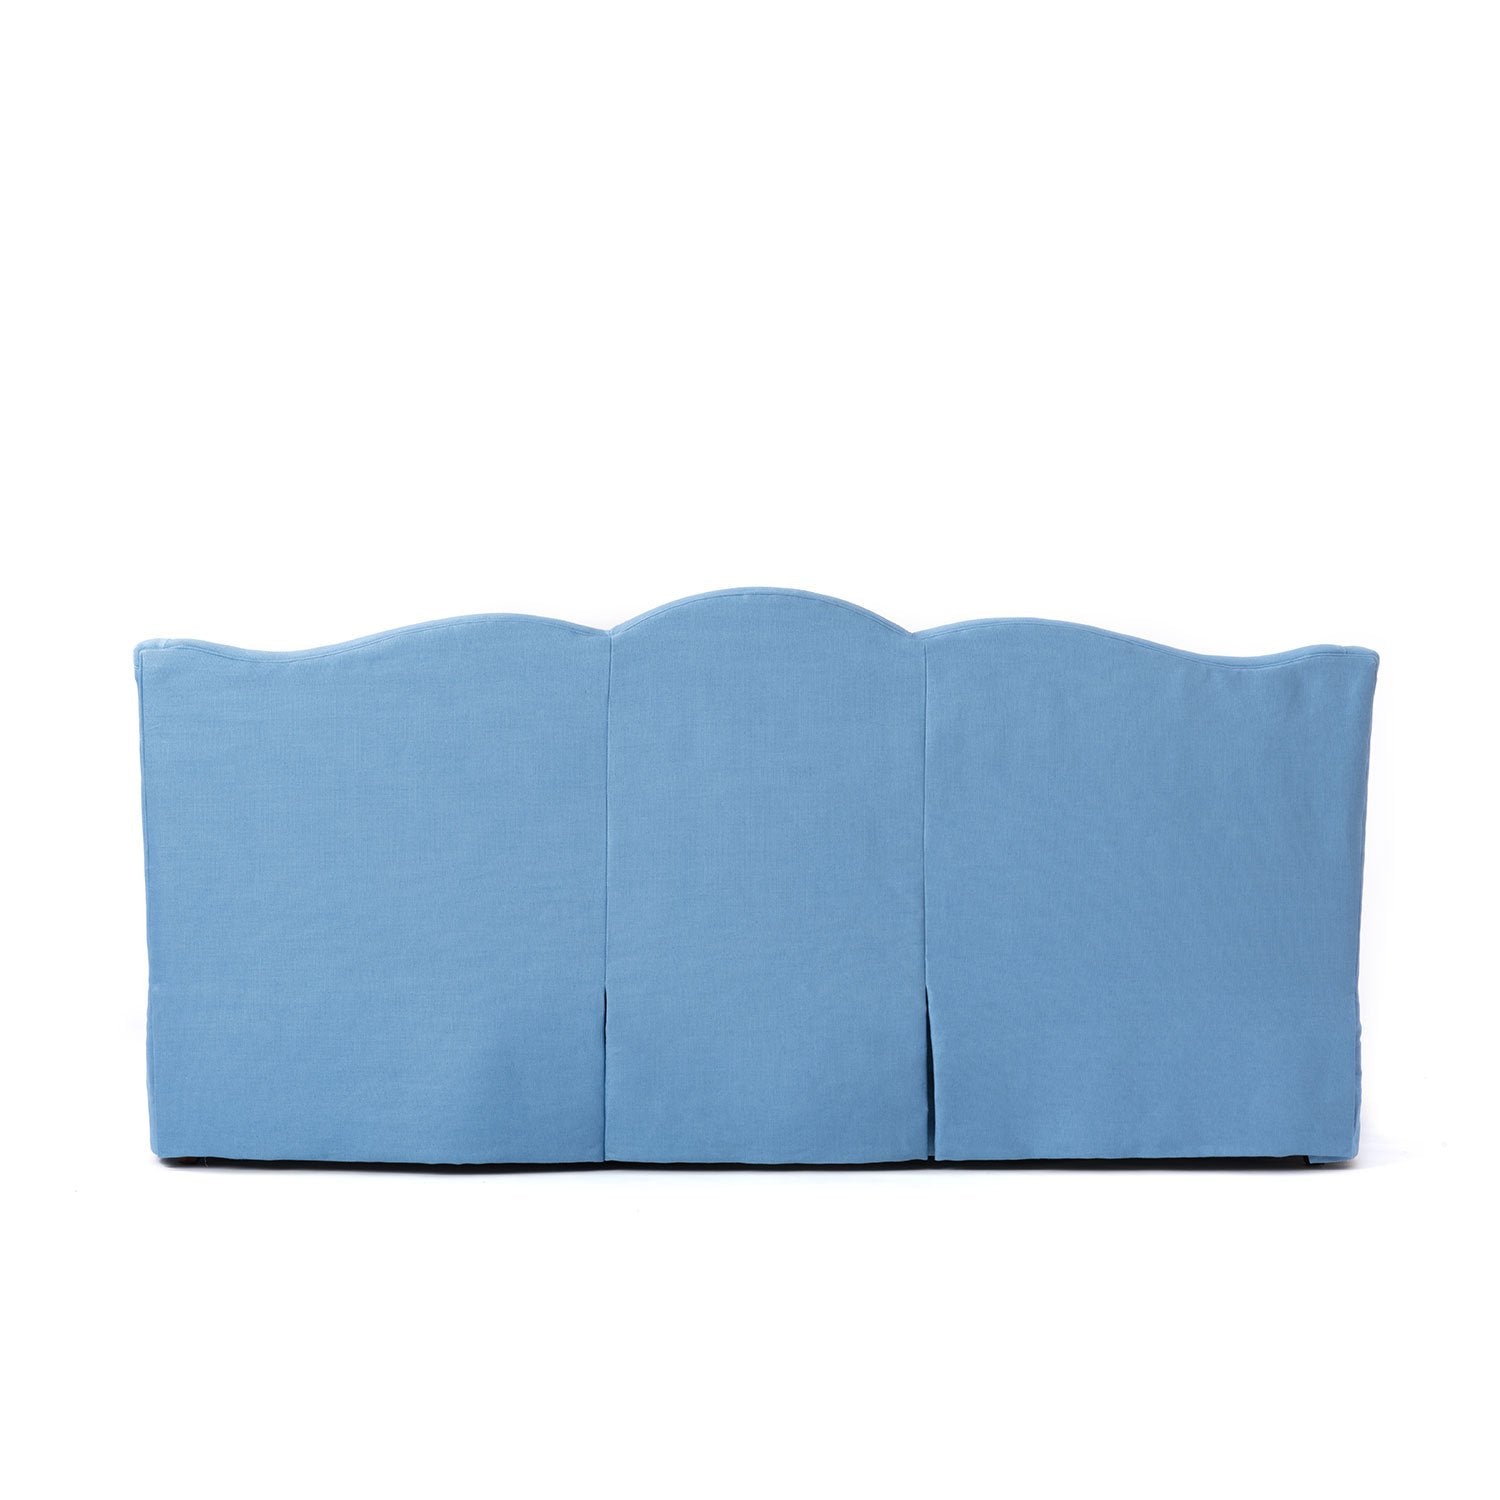 Back of Kennedy Blue Sofa